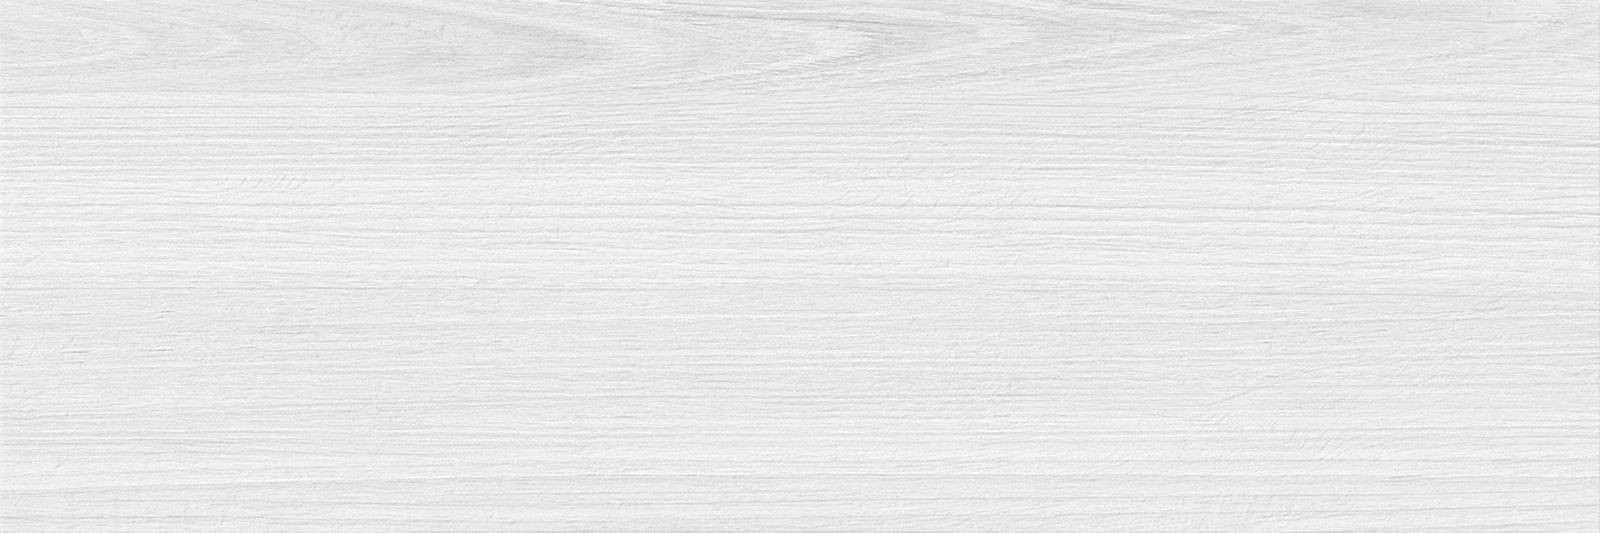 Delacora Timber Gray WT15TMB15 250*750 (8 шт в уп/63 м в пал)